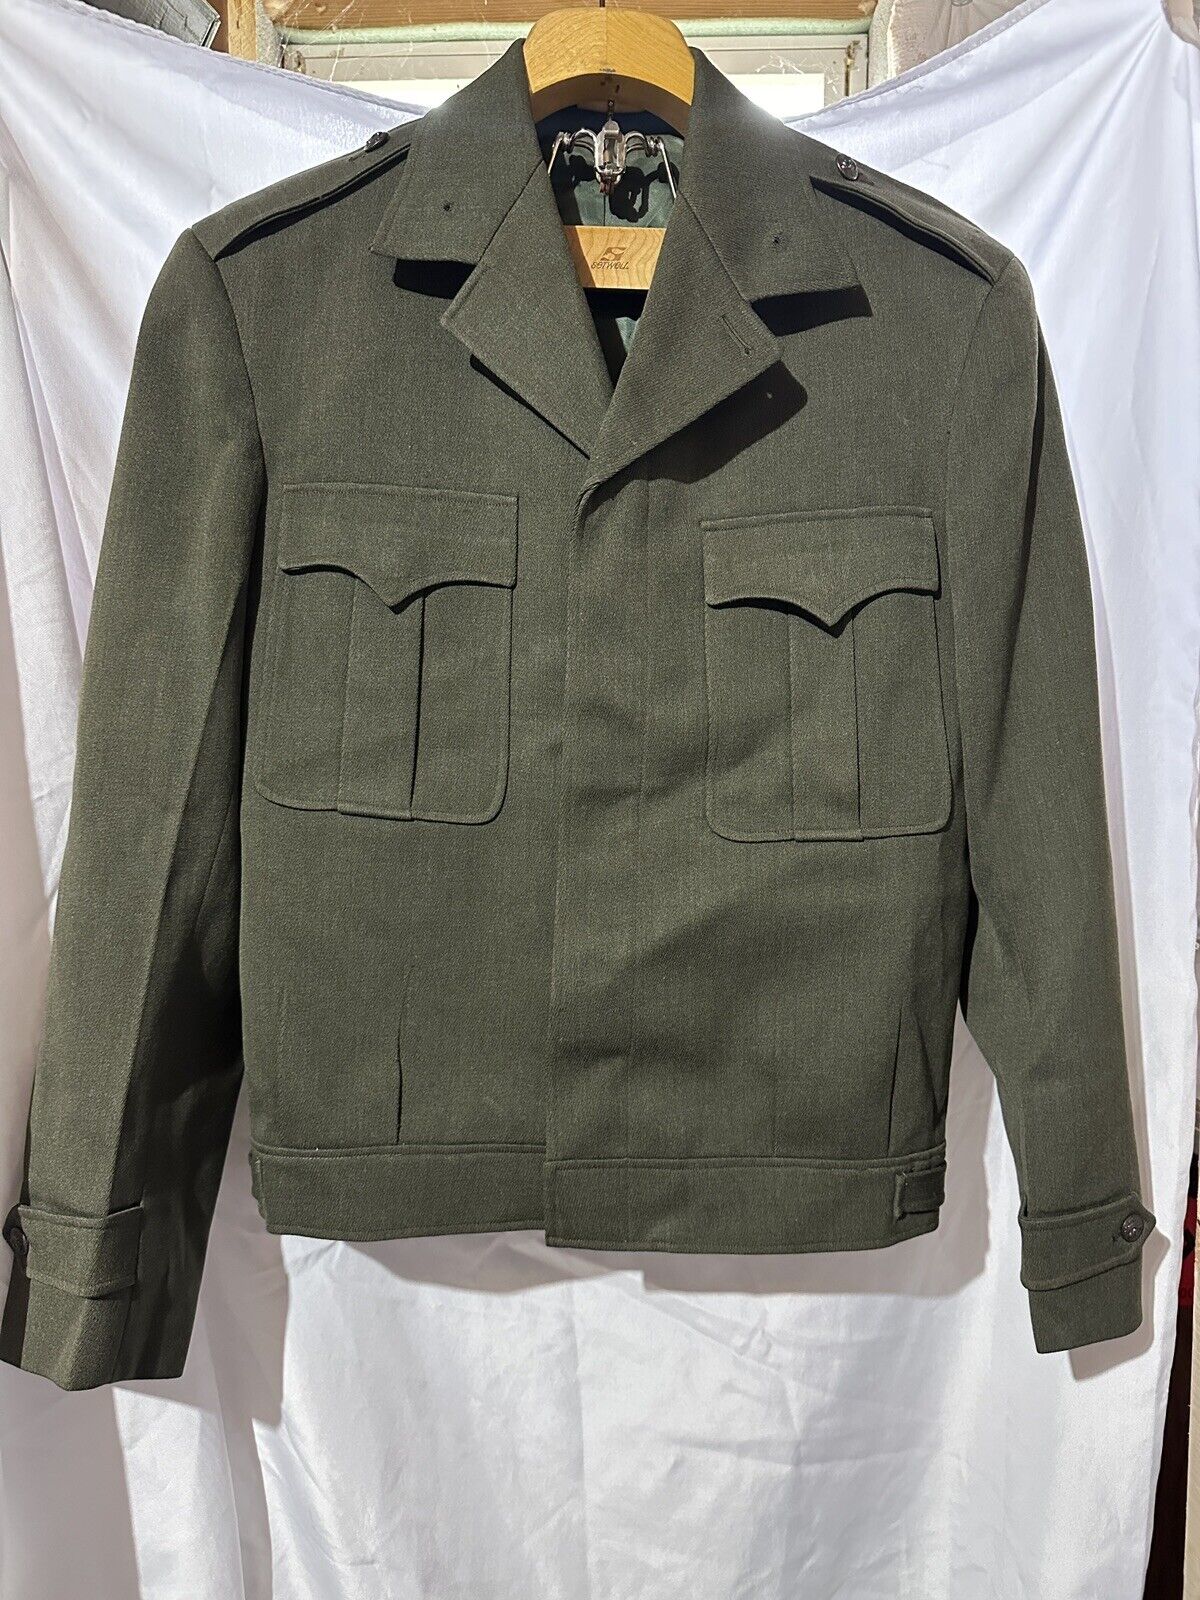 Vintage Korea USMC US MARINE CORPS OD WOOL “IKE” NCO Dress Jacket Medium NAMED